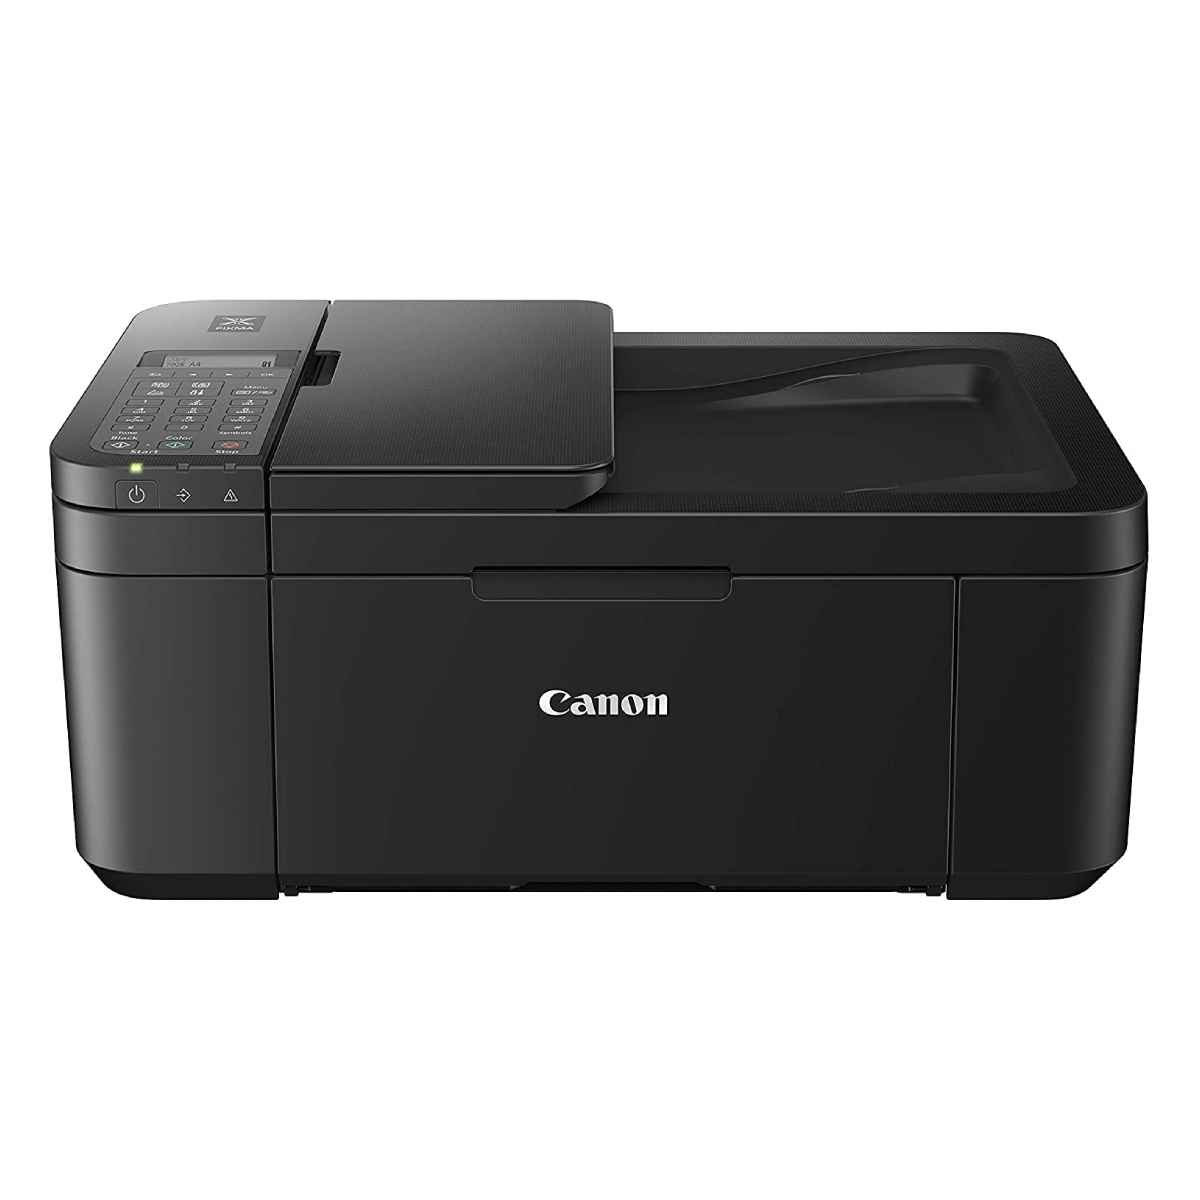 കാനോൻ PIXMA E4570 All-in-One Printer 